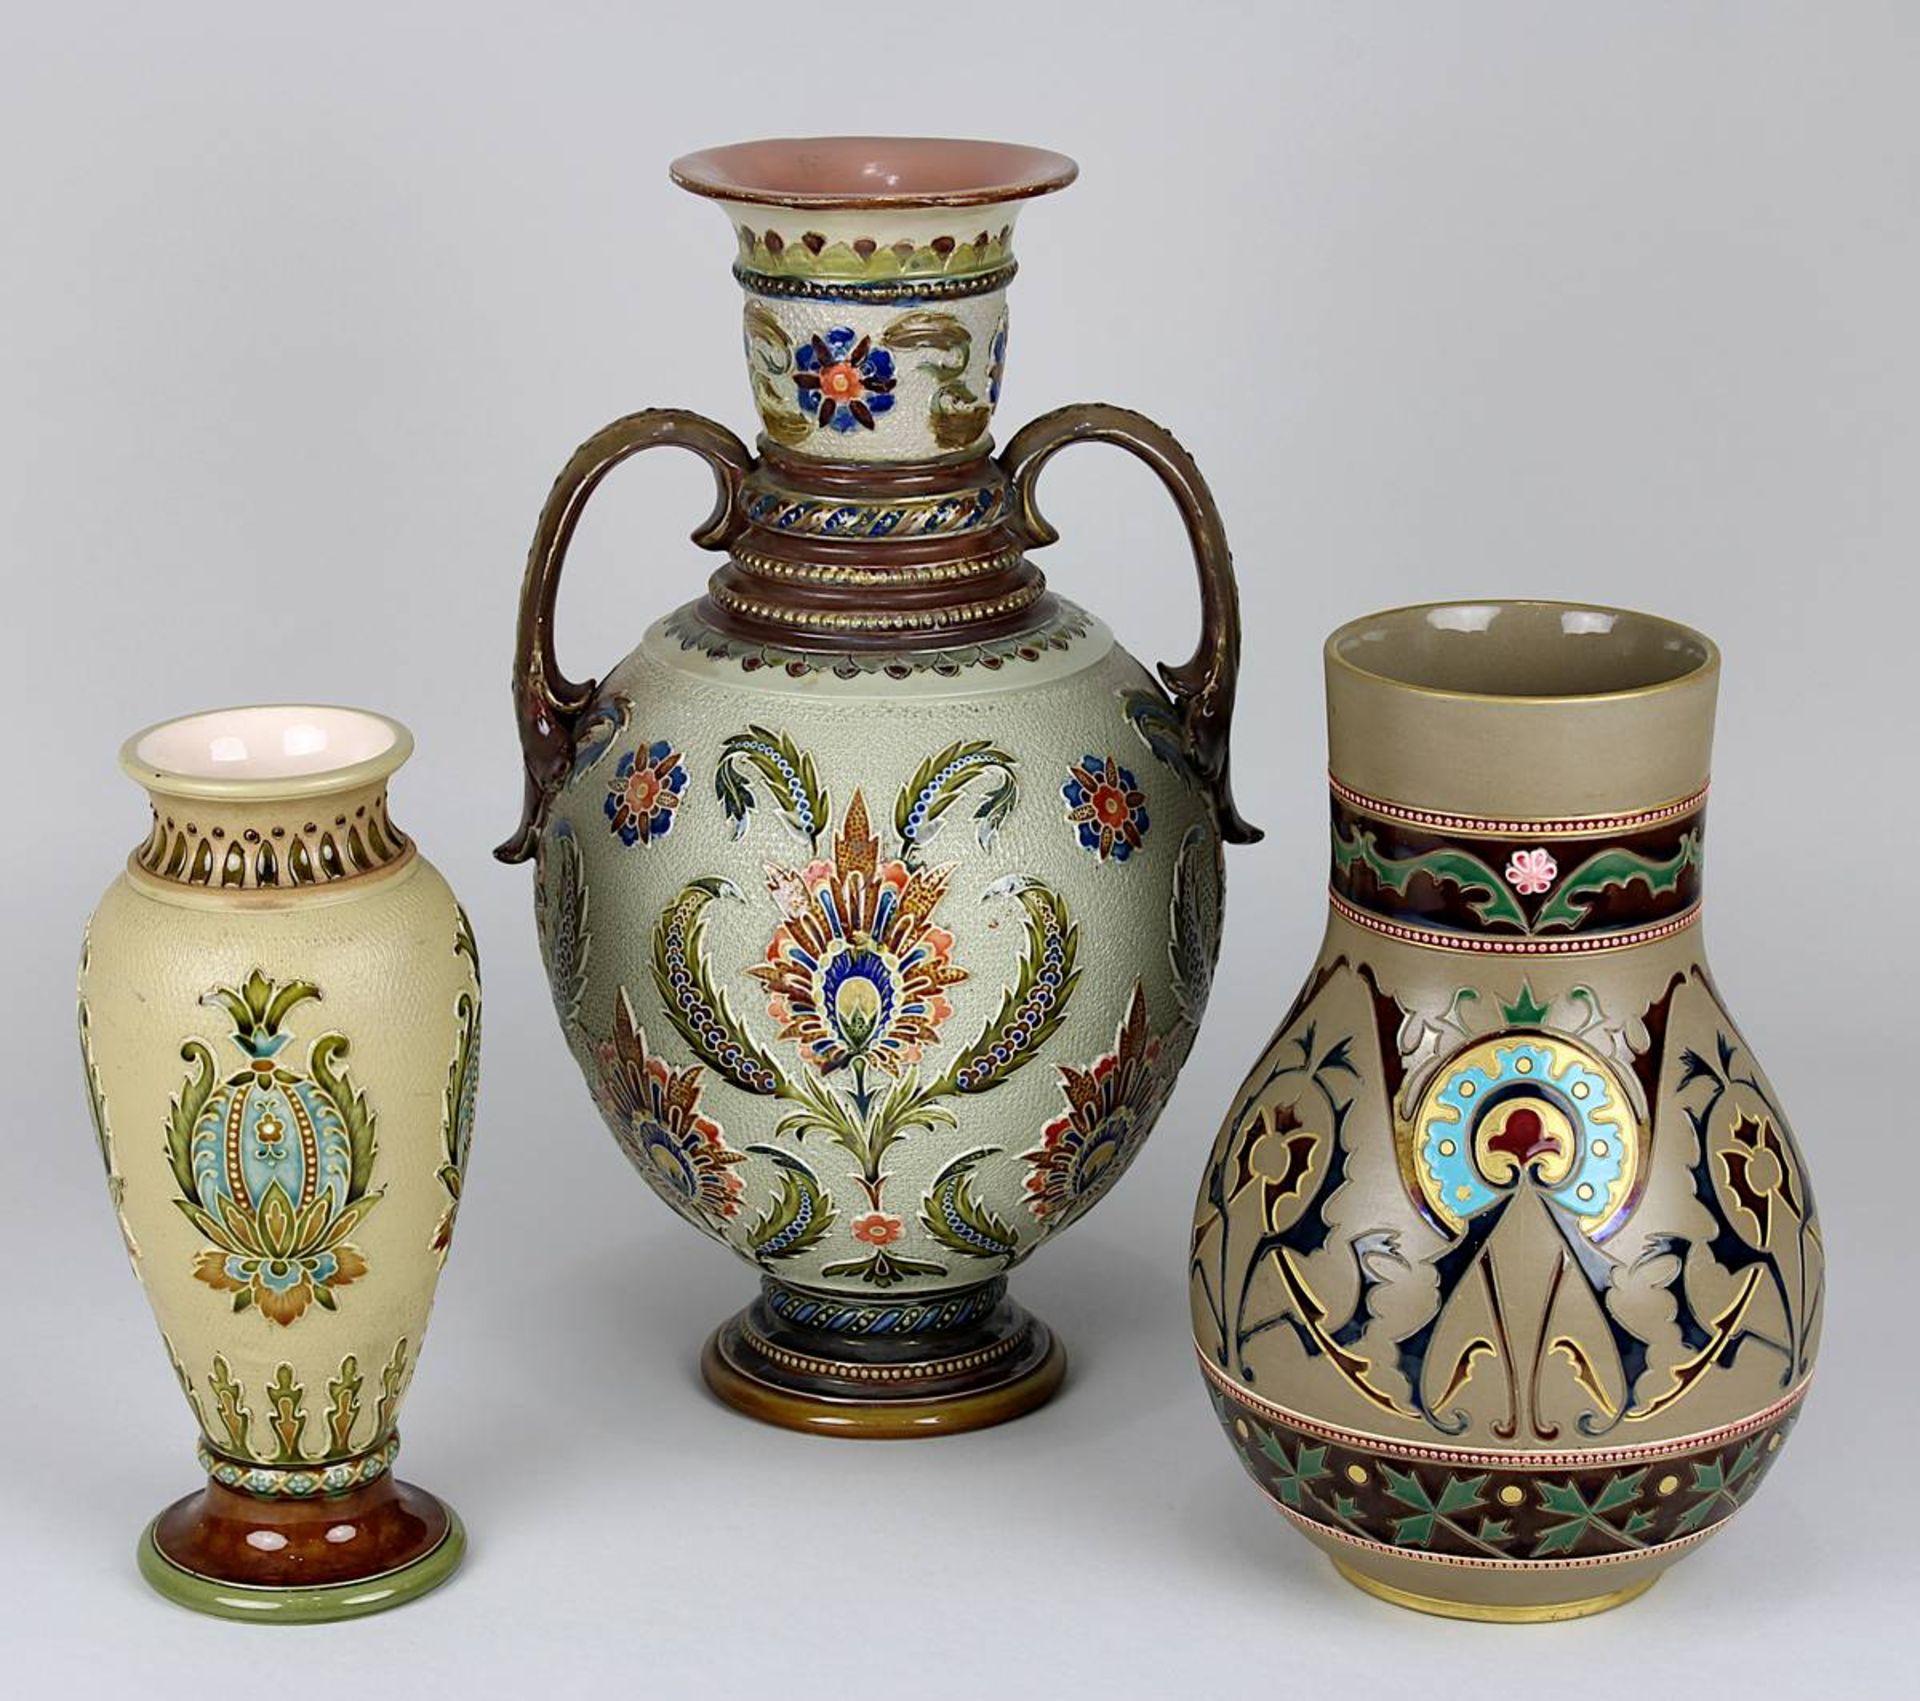 Zwei Villeroy & Boch Vasen und eine Saargemünd - Vase um 1900, Steingut, alle mit reliefierter